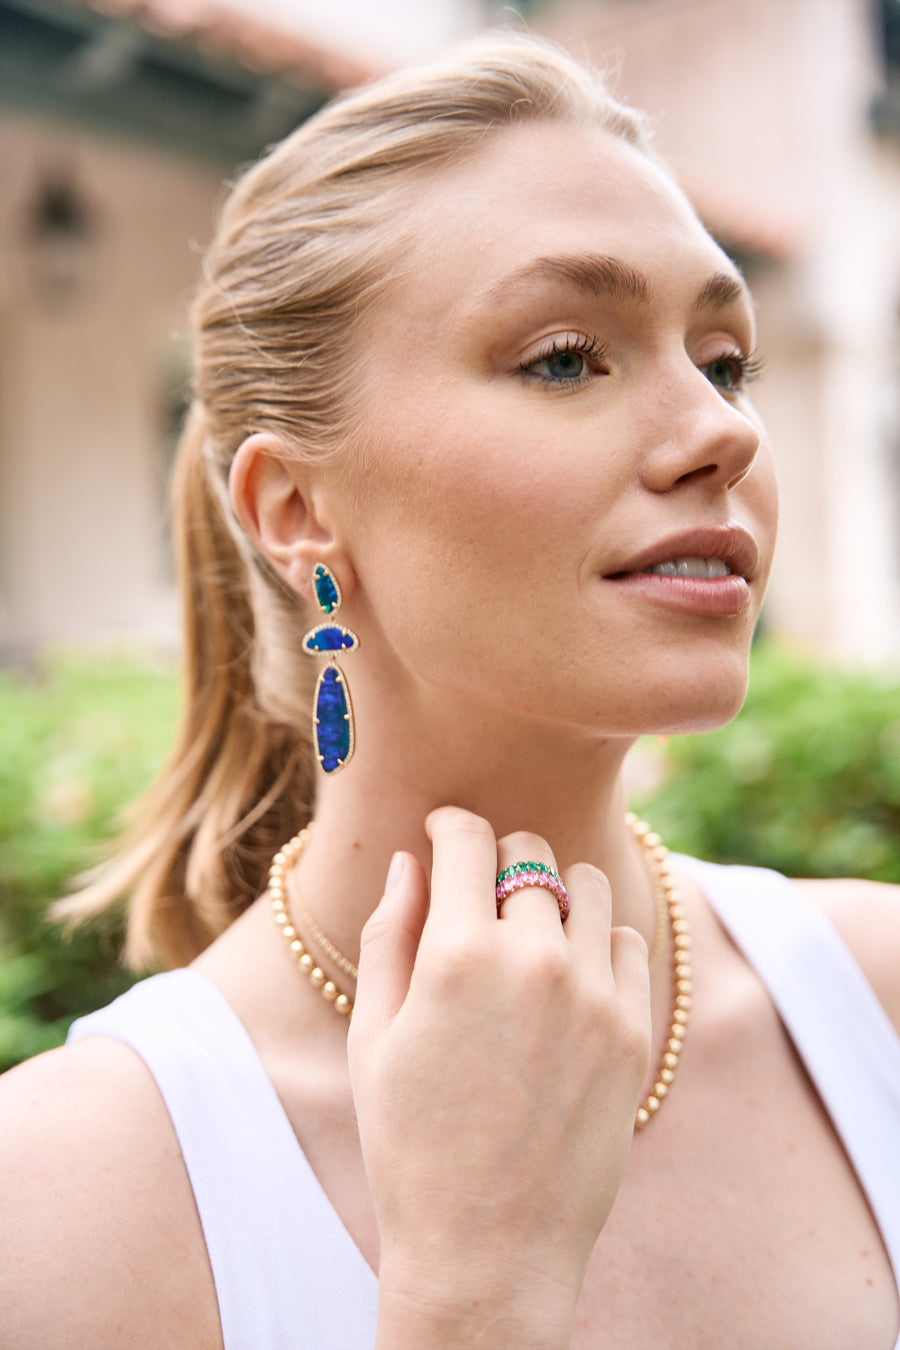 Blue Opal Dangling Earrings